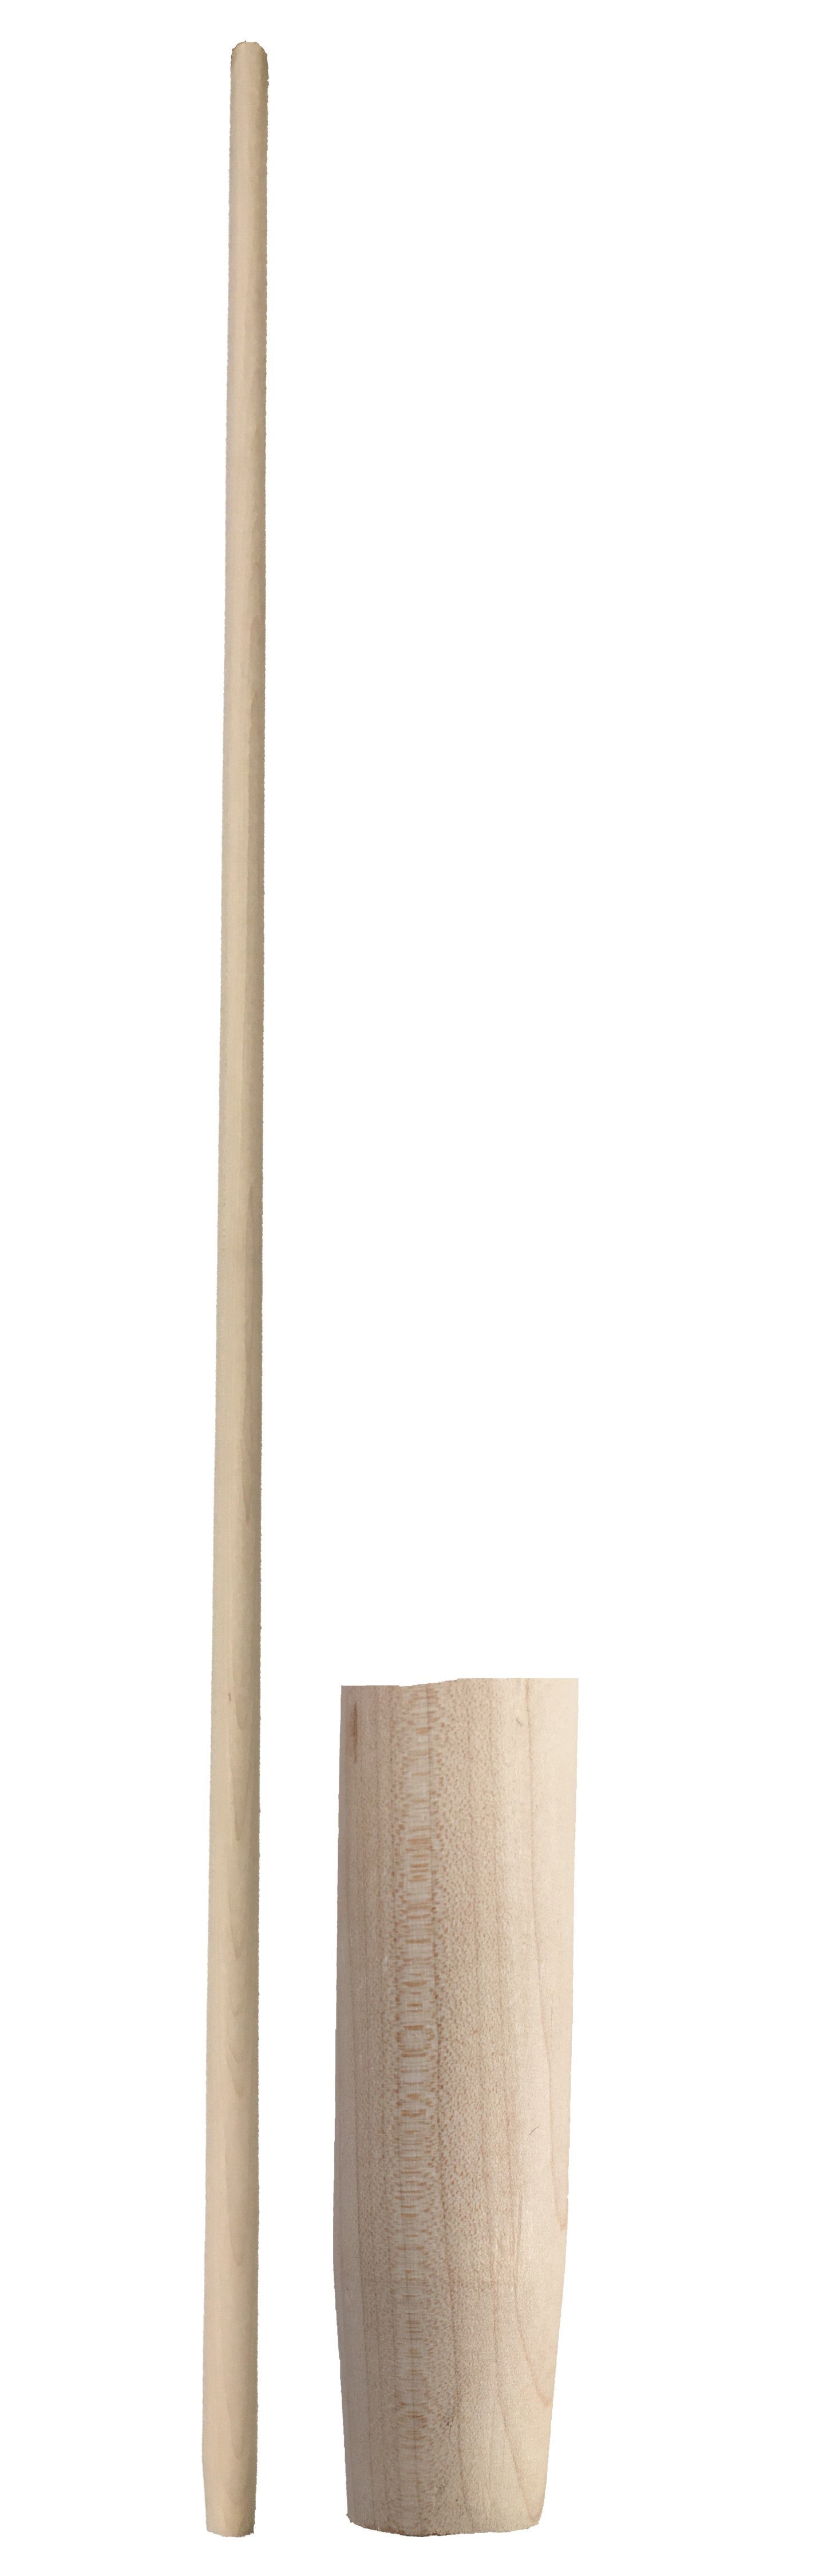 Manico per scopa legno extra 150 cm